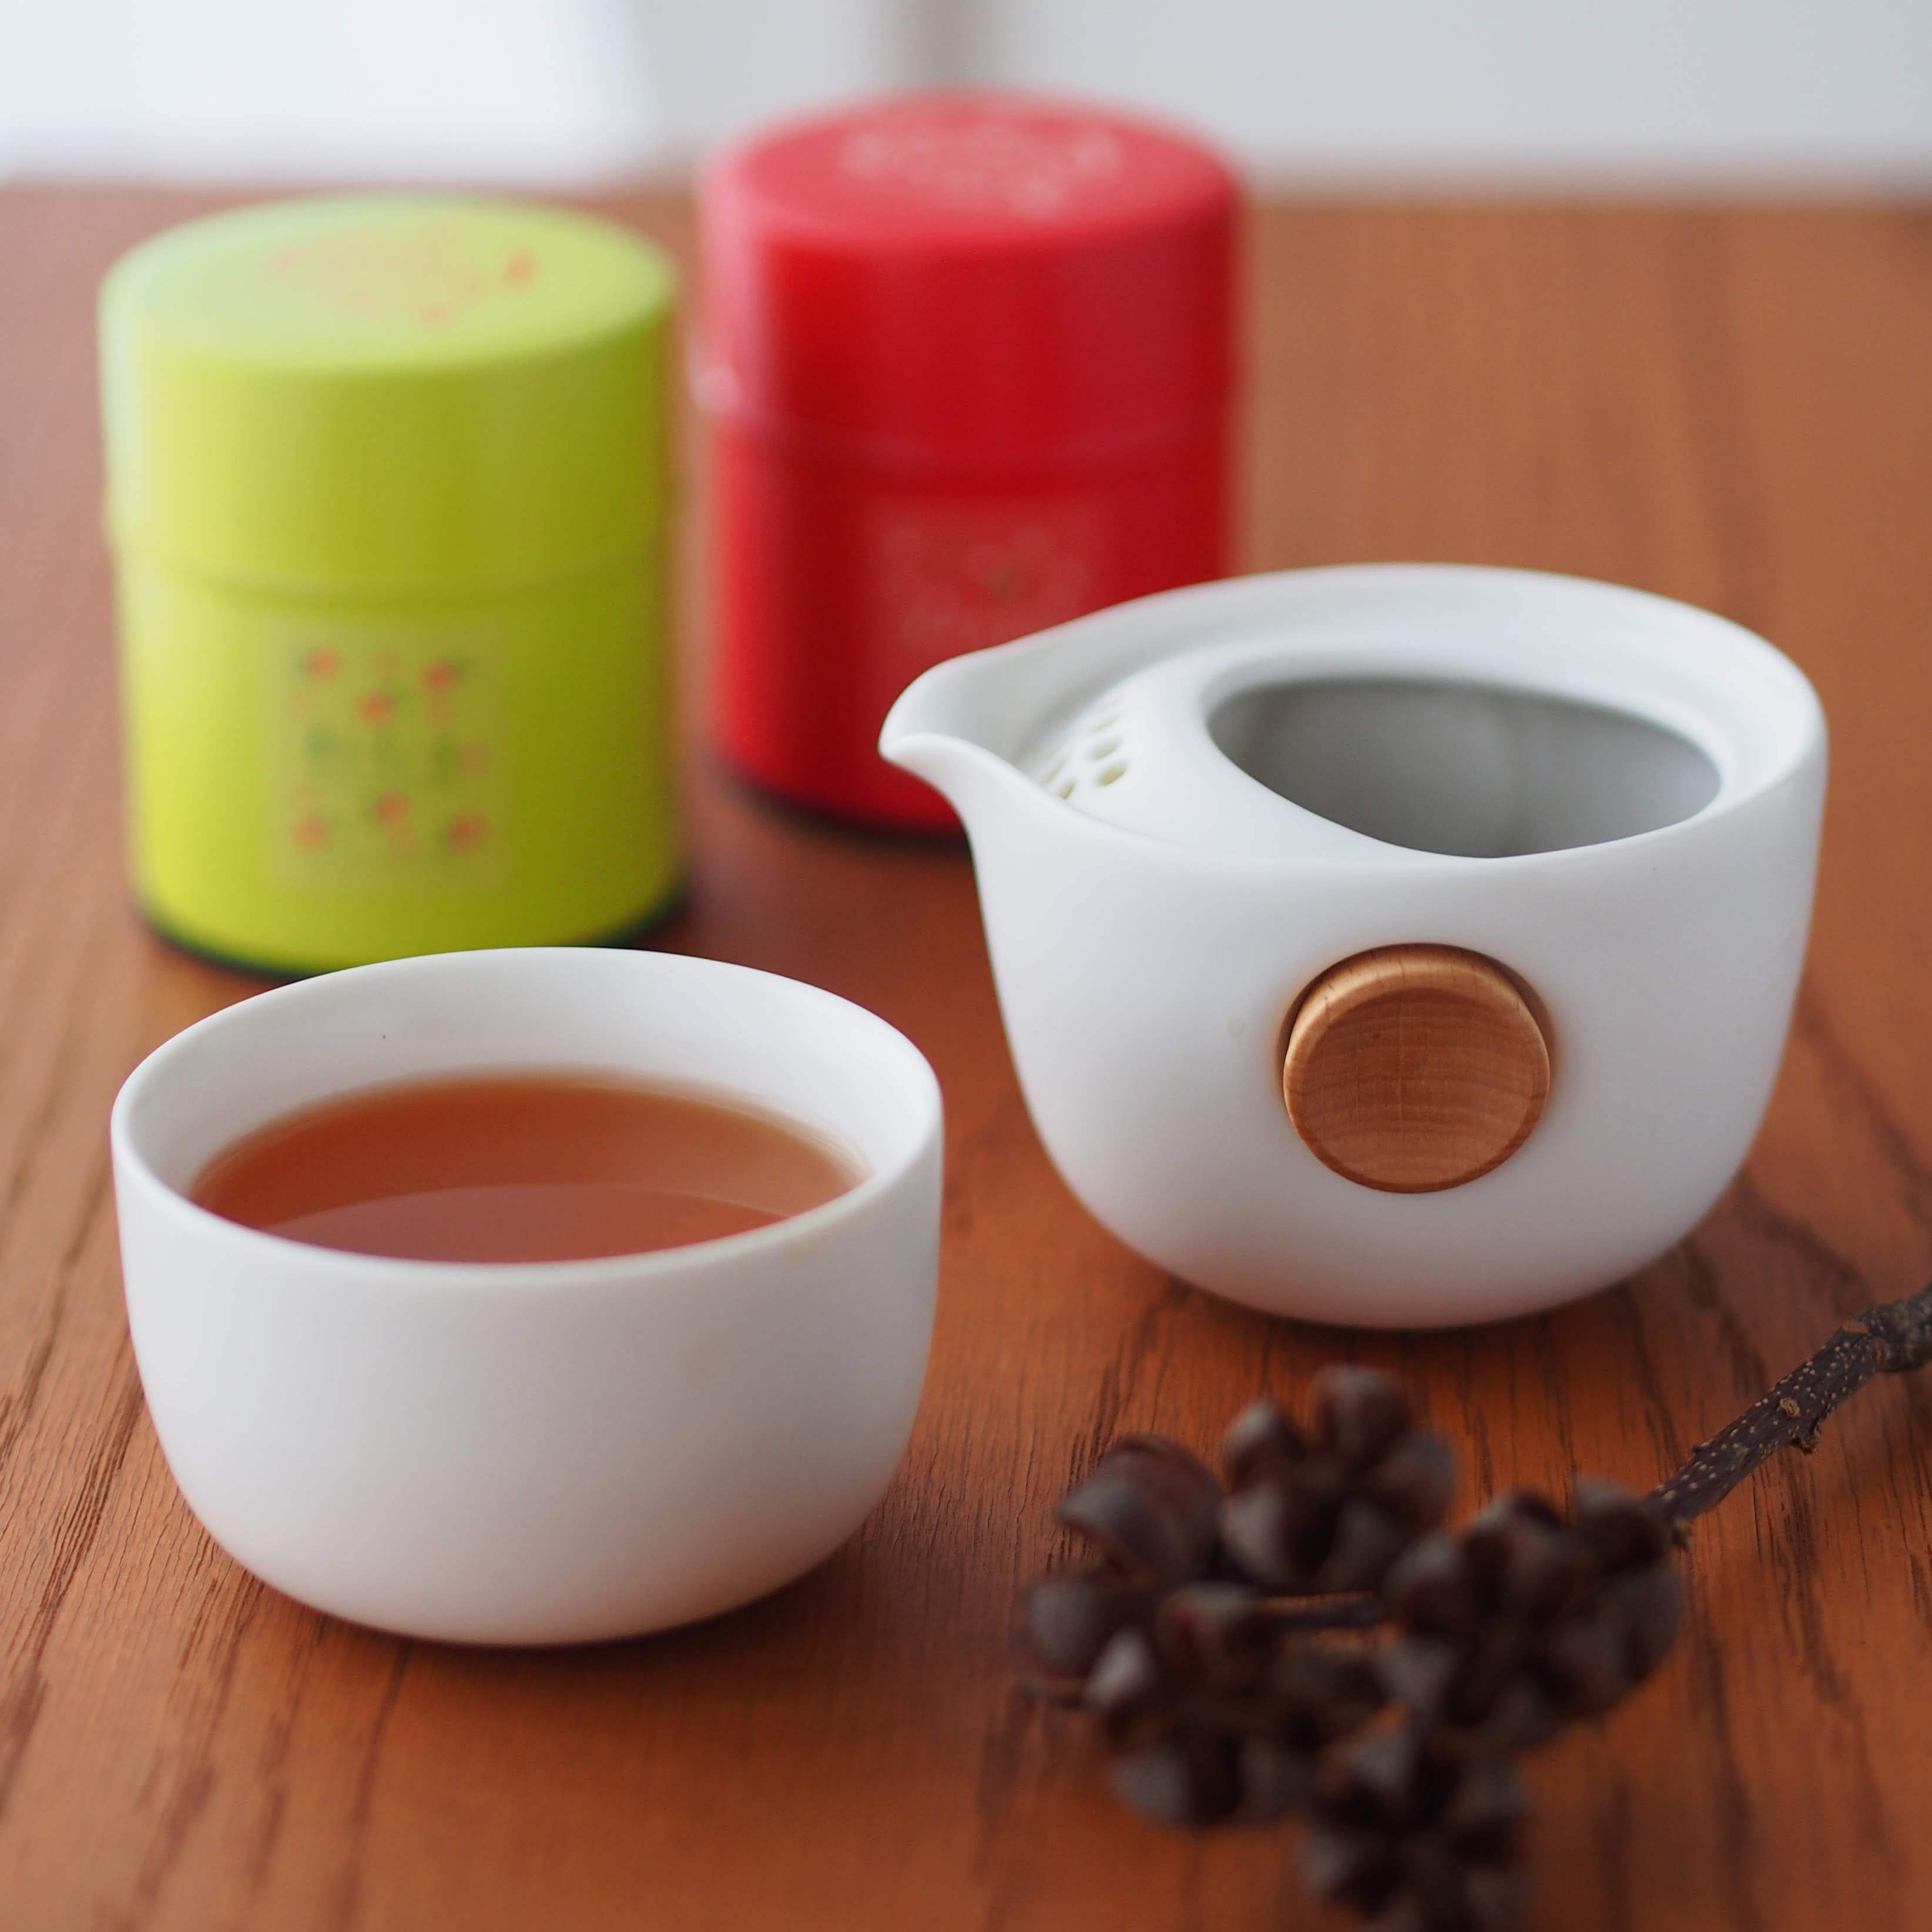 【台湾茶藝館 狐月庵】プレゼント、ギフトに台湾茶は如何でしょうか。台湾茶 台湾茶器と茶缶2個セット【翠玉色】